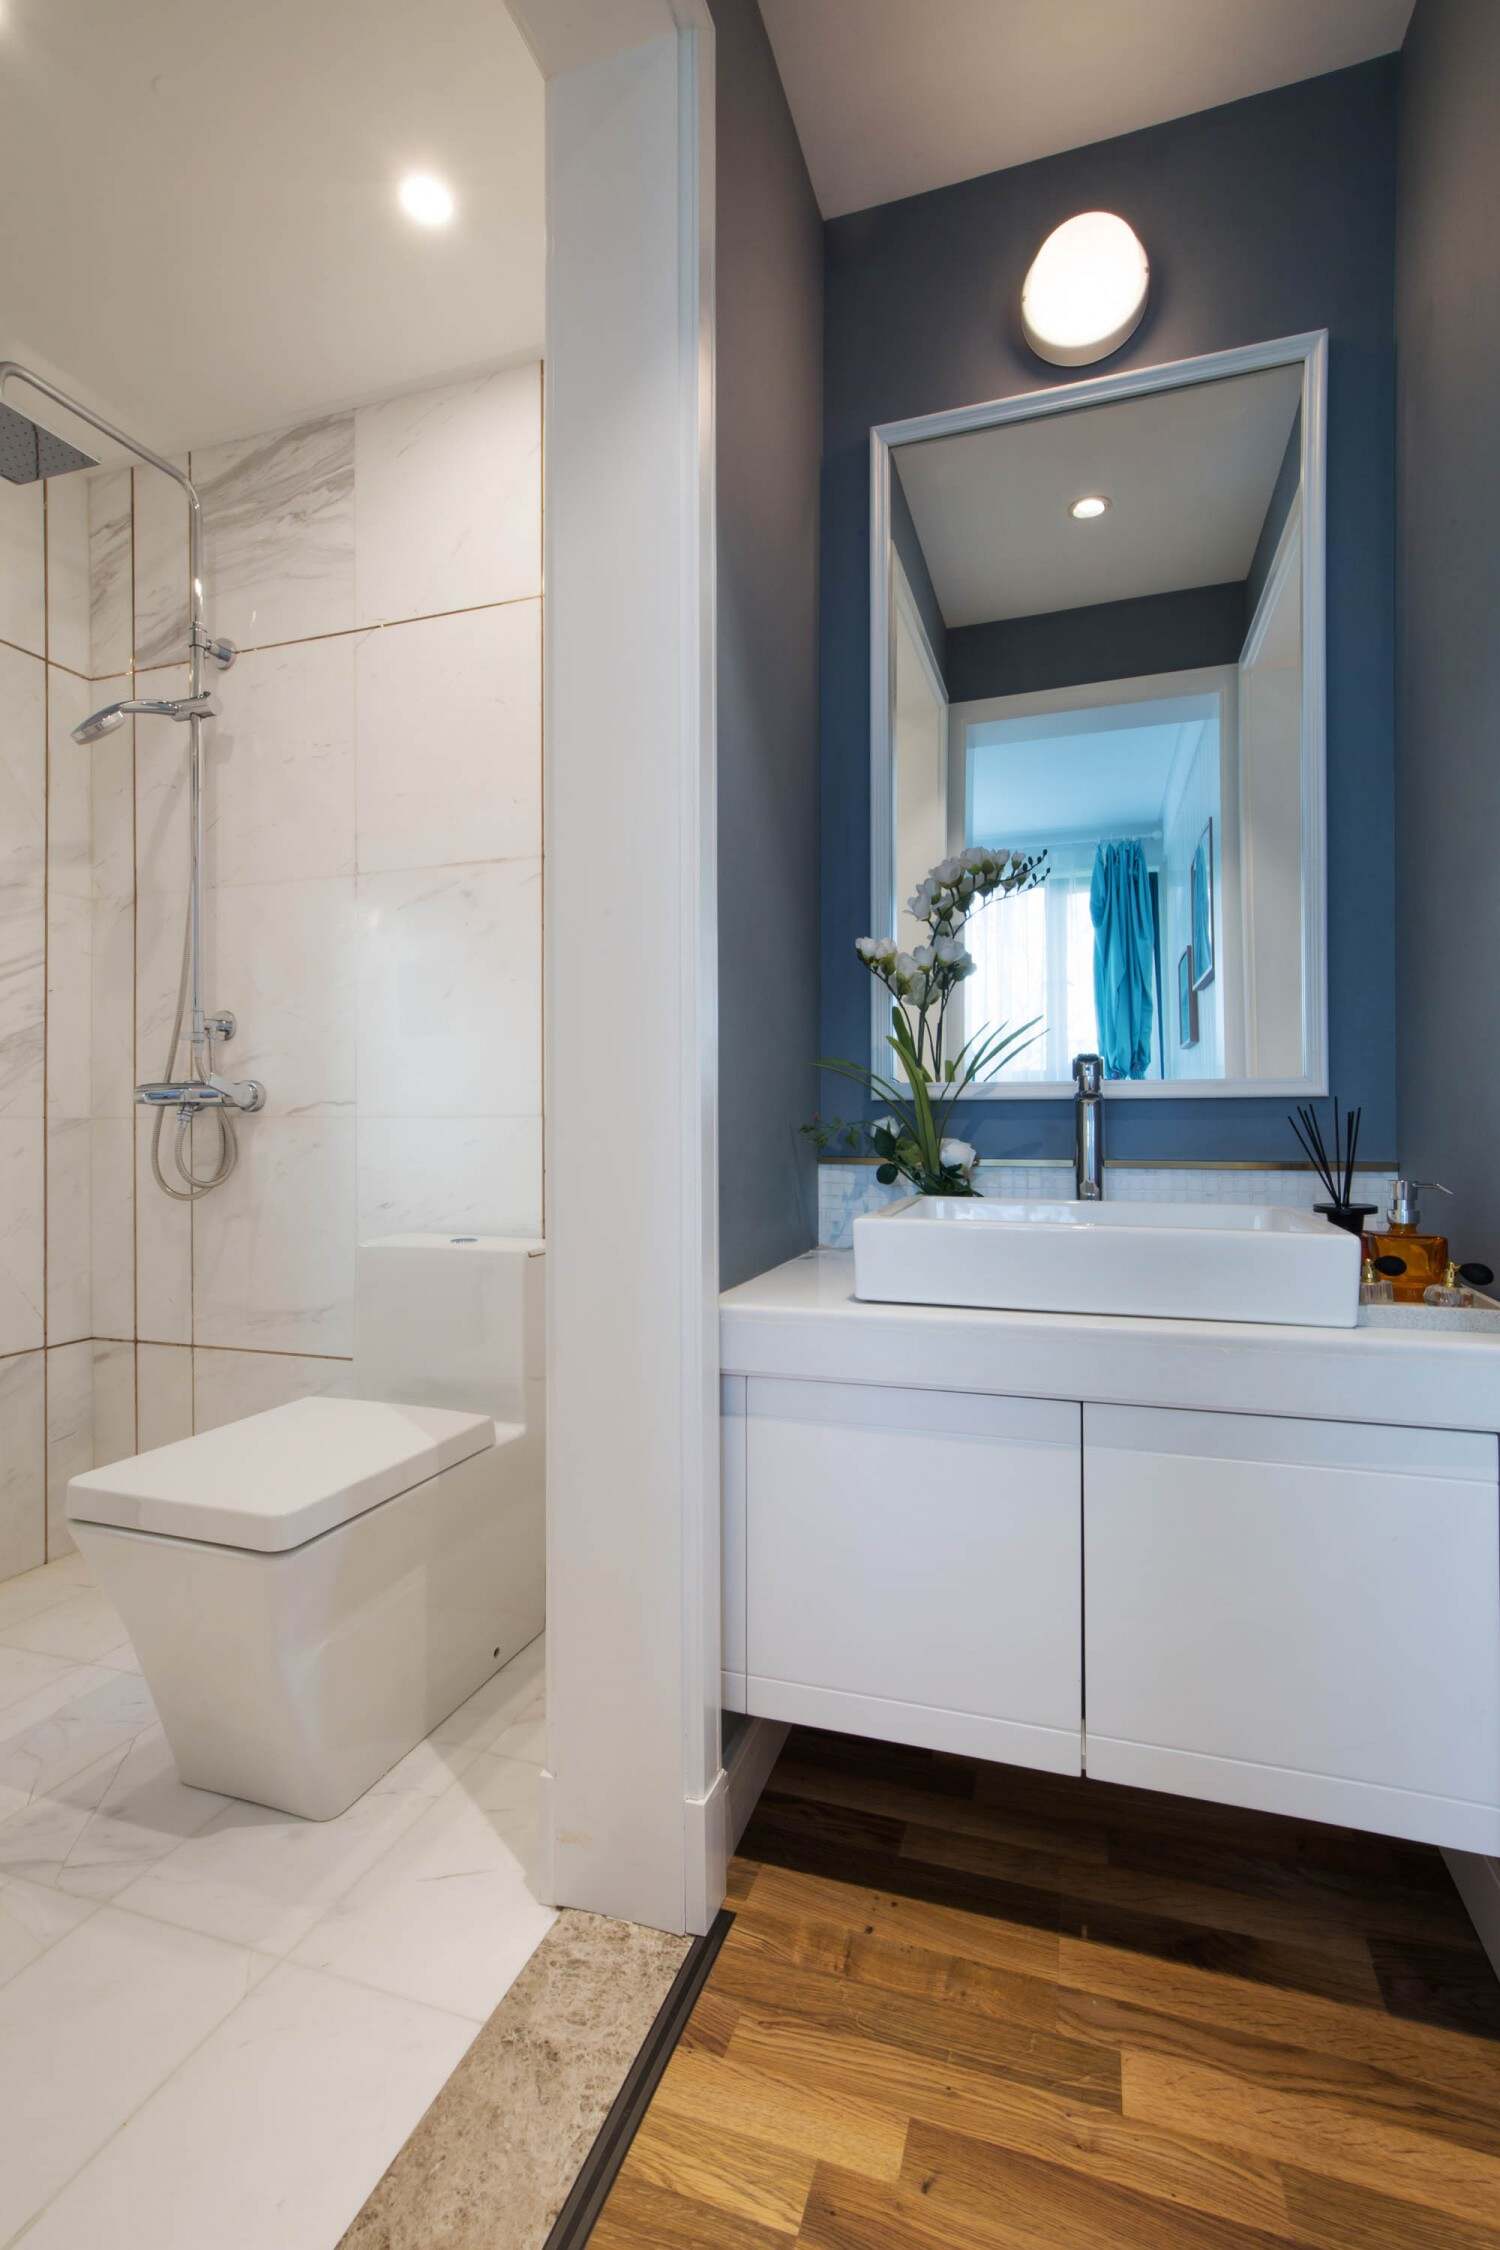 现代风格的卫生间装设，把卫生间跟洗手池很好的分离开来，做到了干湿分离，选取的洁具都是白色的使人看上去会很干净。